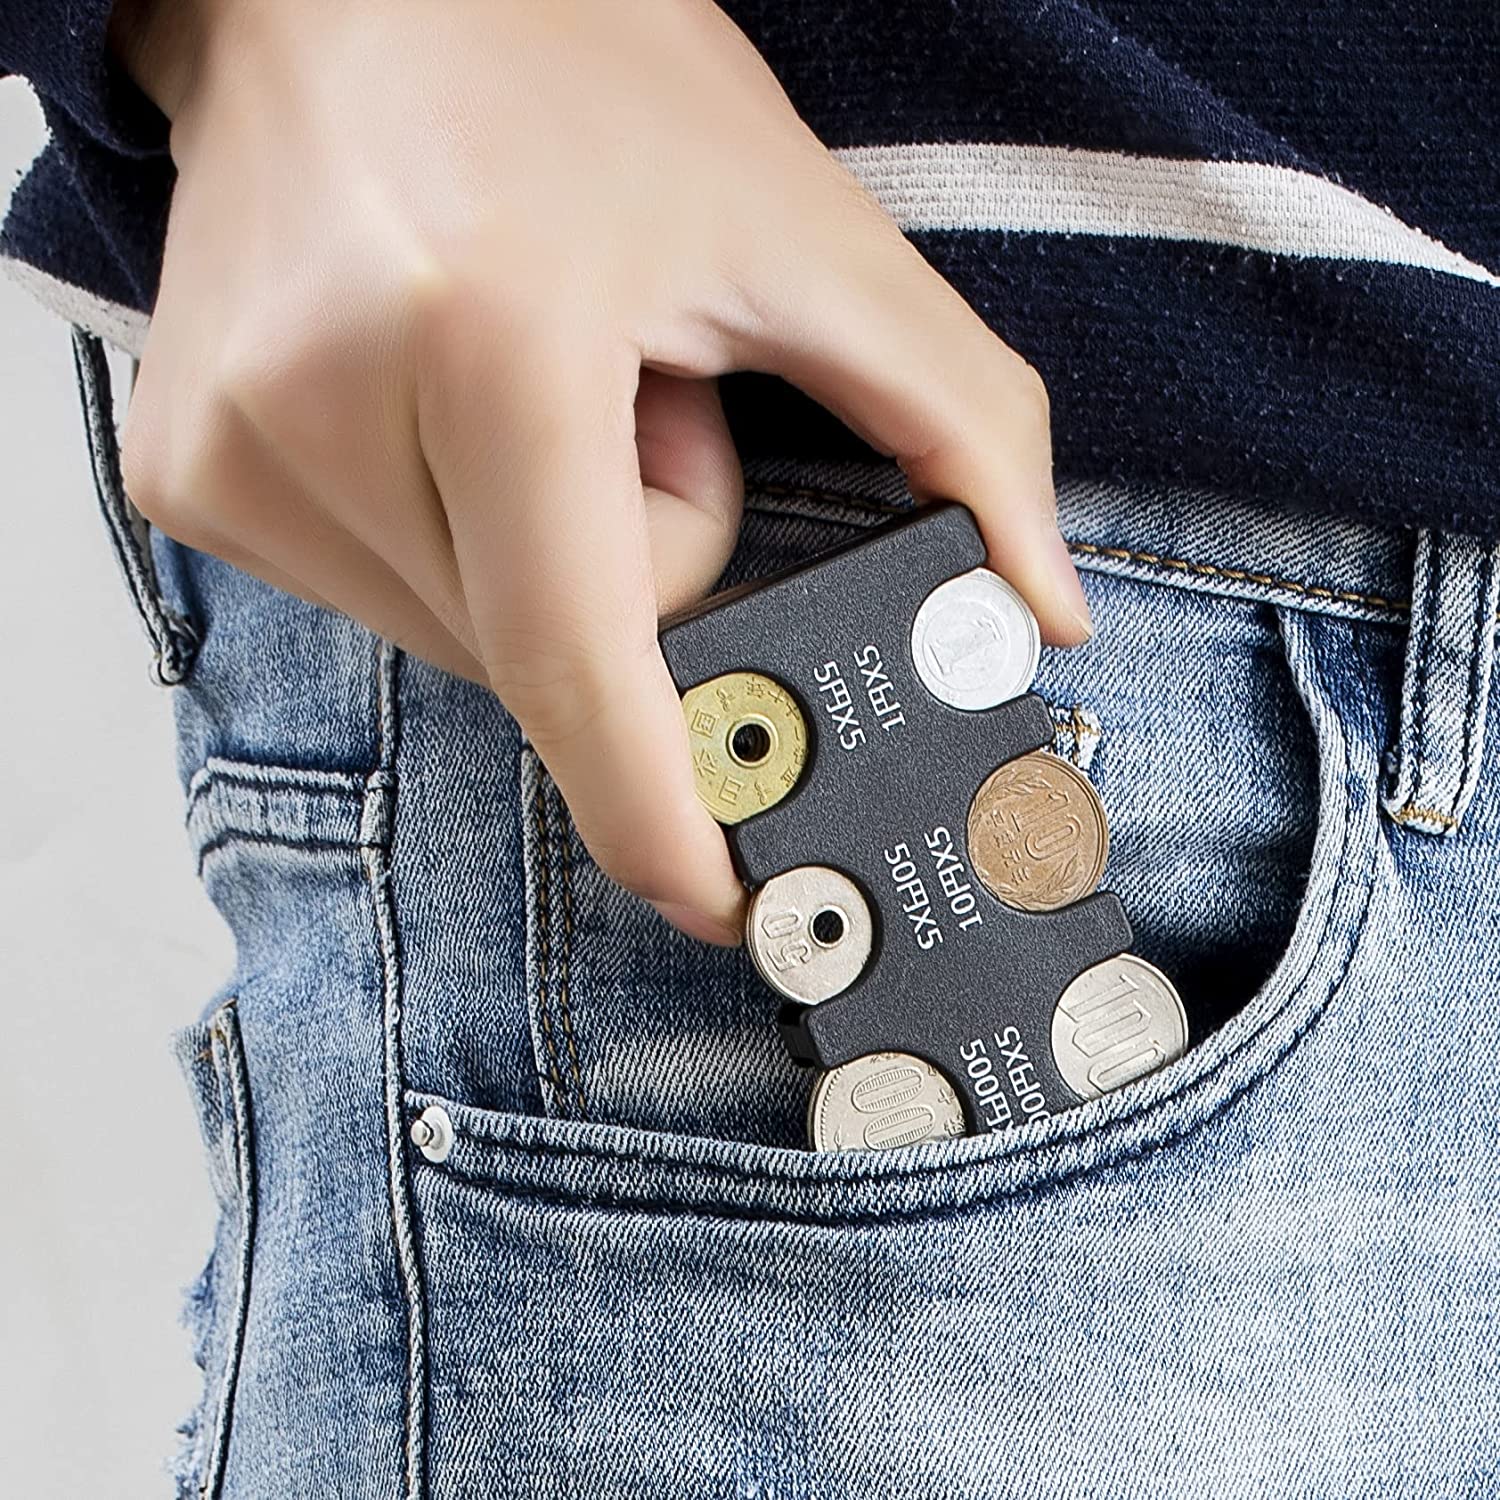 携帯 コインホルダー 硬貨収納 小銭財布 軽量 コンパクト 片手で取り出せ ブラック (ブラック)742218